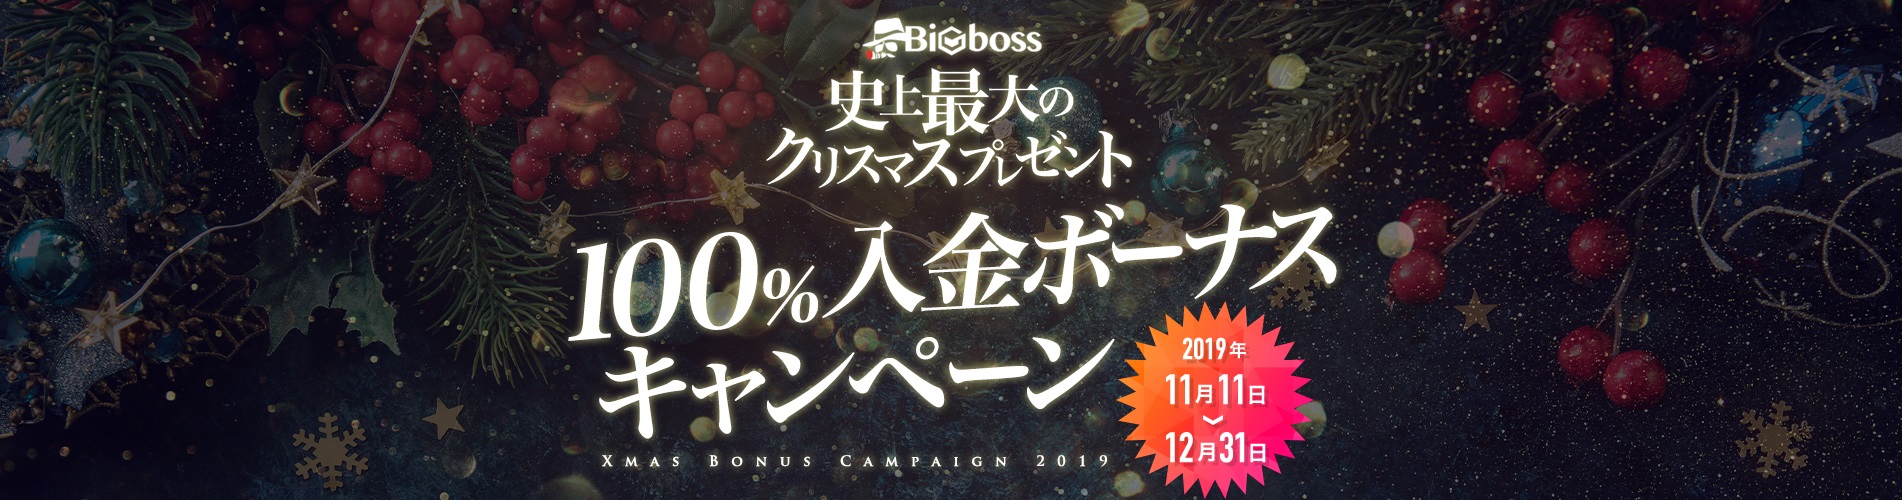 【BigBoss】クリスマス100%入金ボーナスキャンペーン